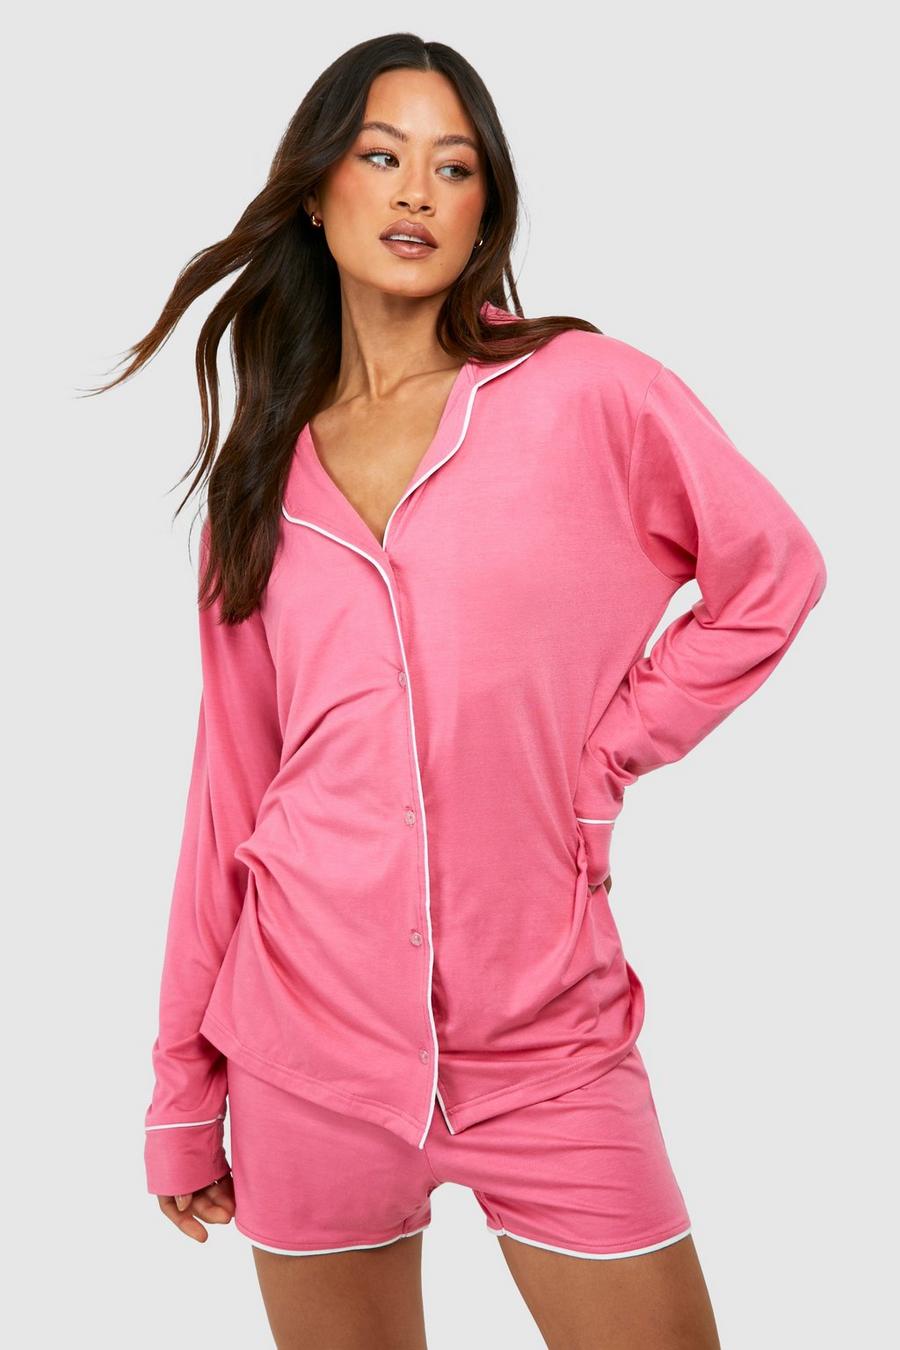 Set pigiama corto Tall in jersey con cordoncino, Hot pink